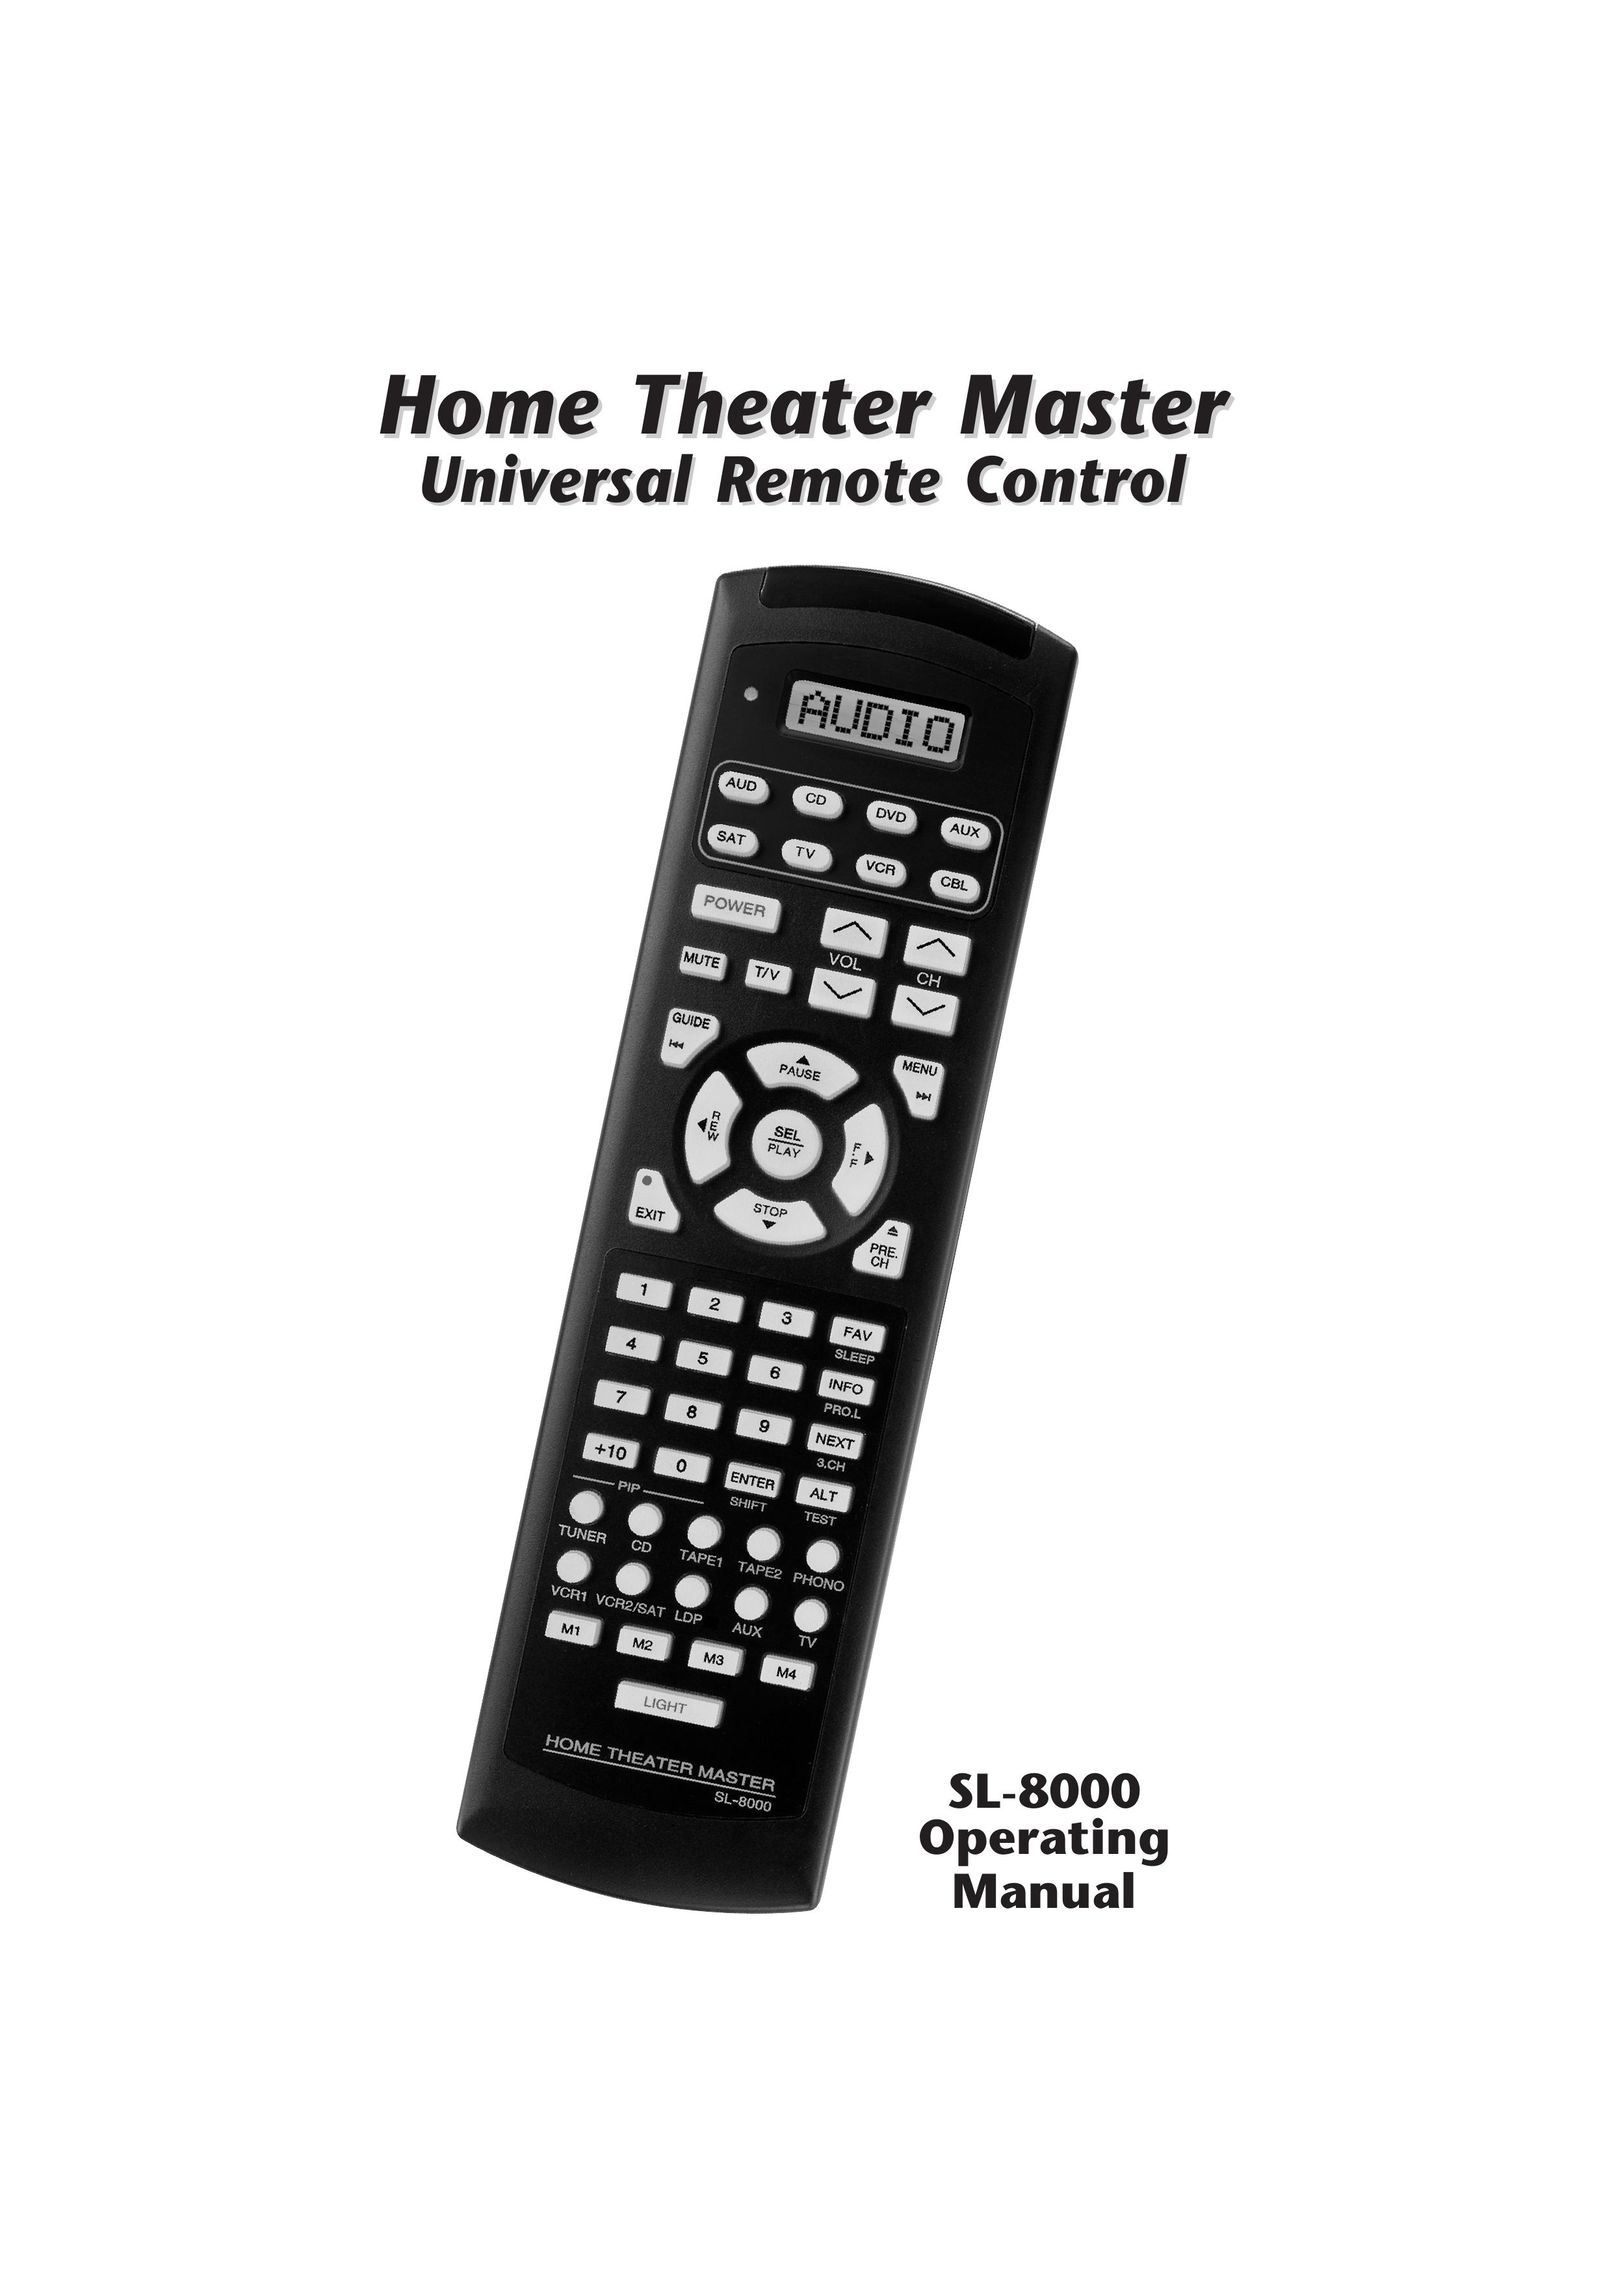 Universal Remote Control SL-8000 Universal Remote User Manual